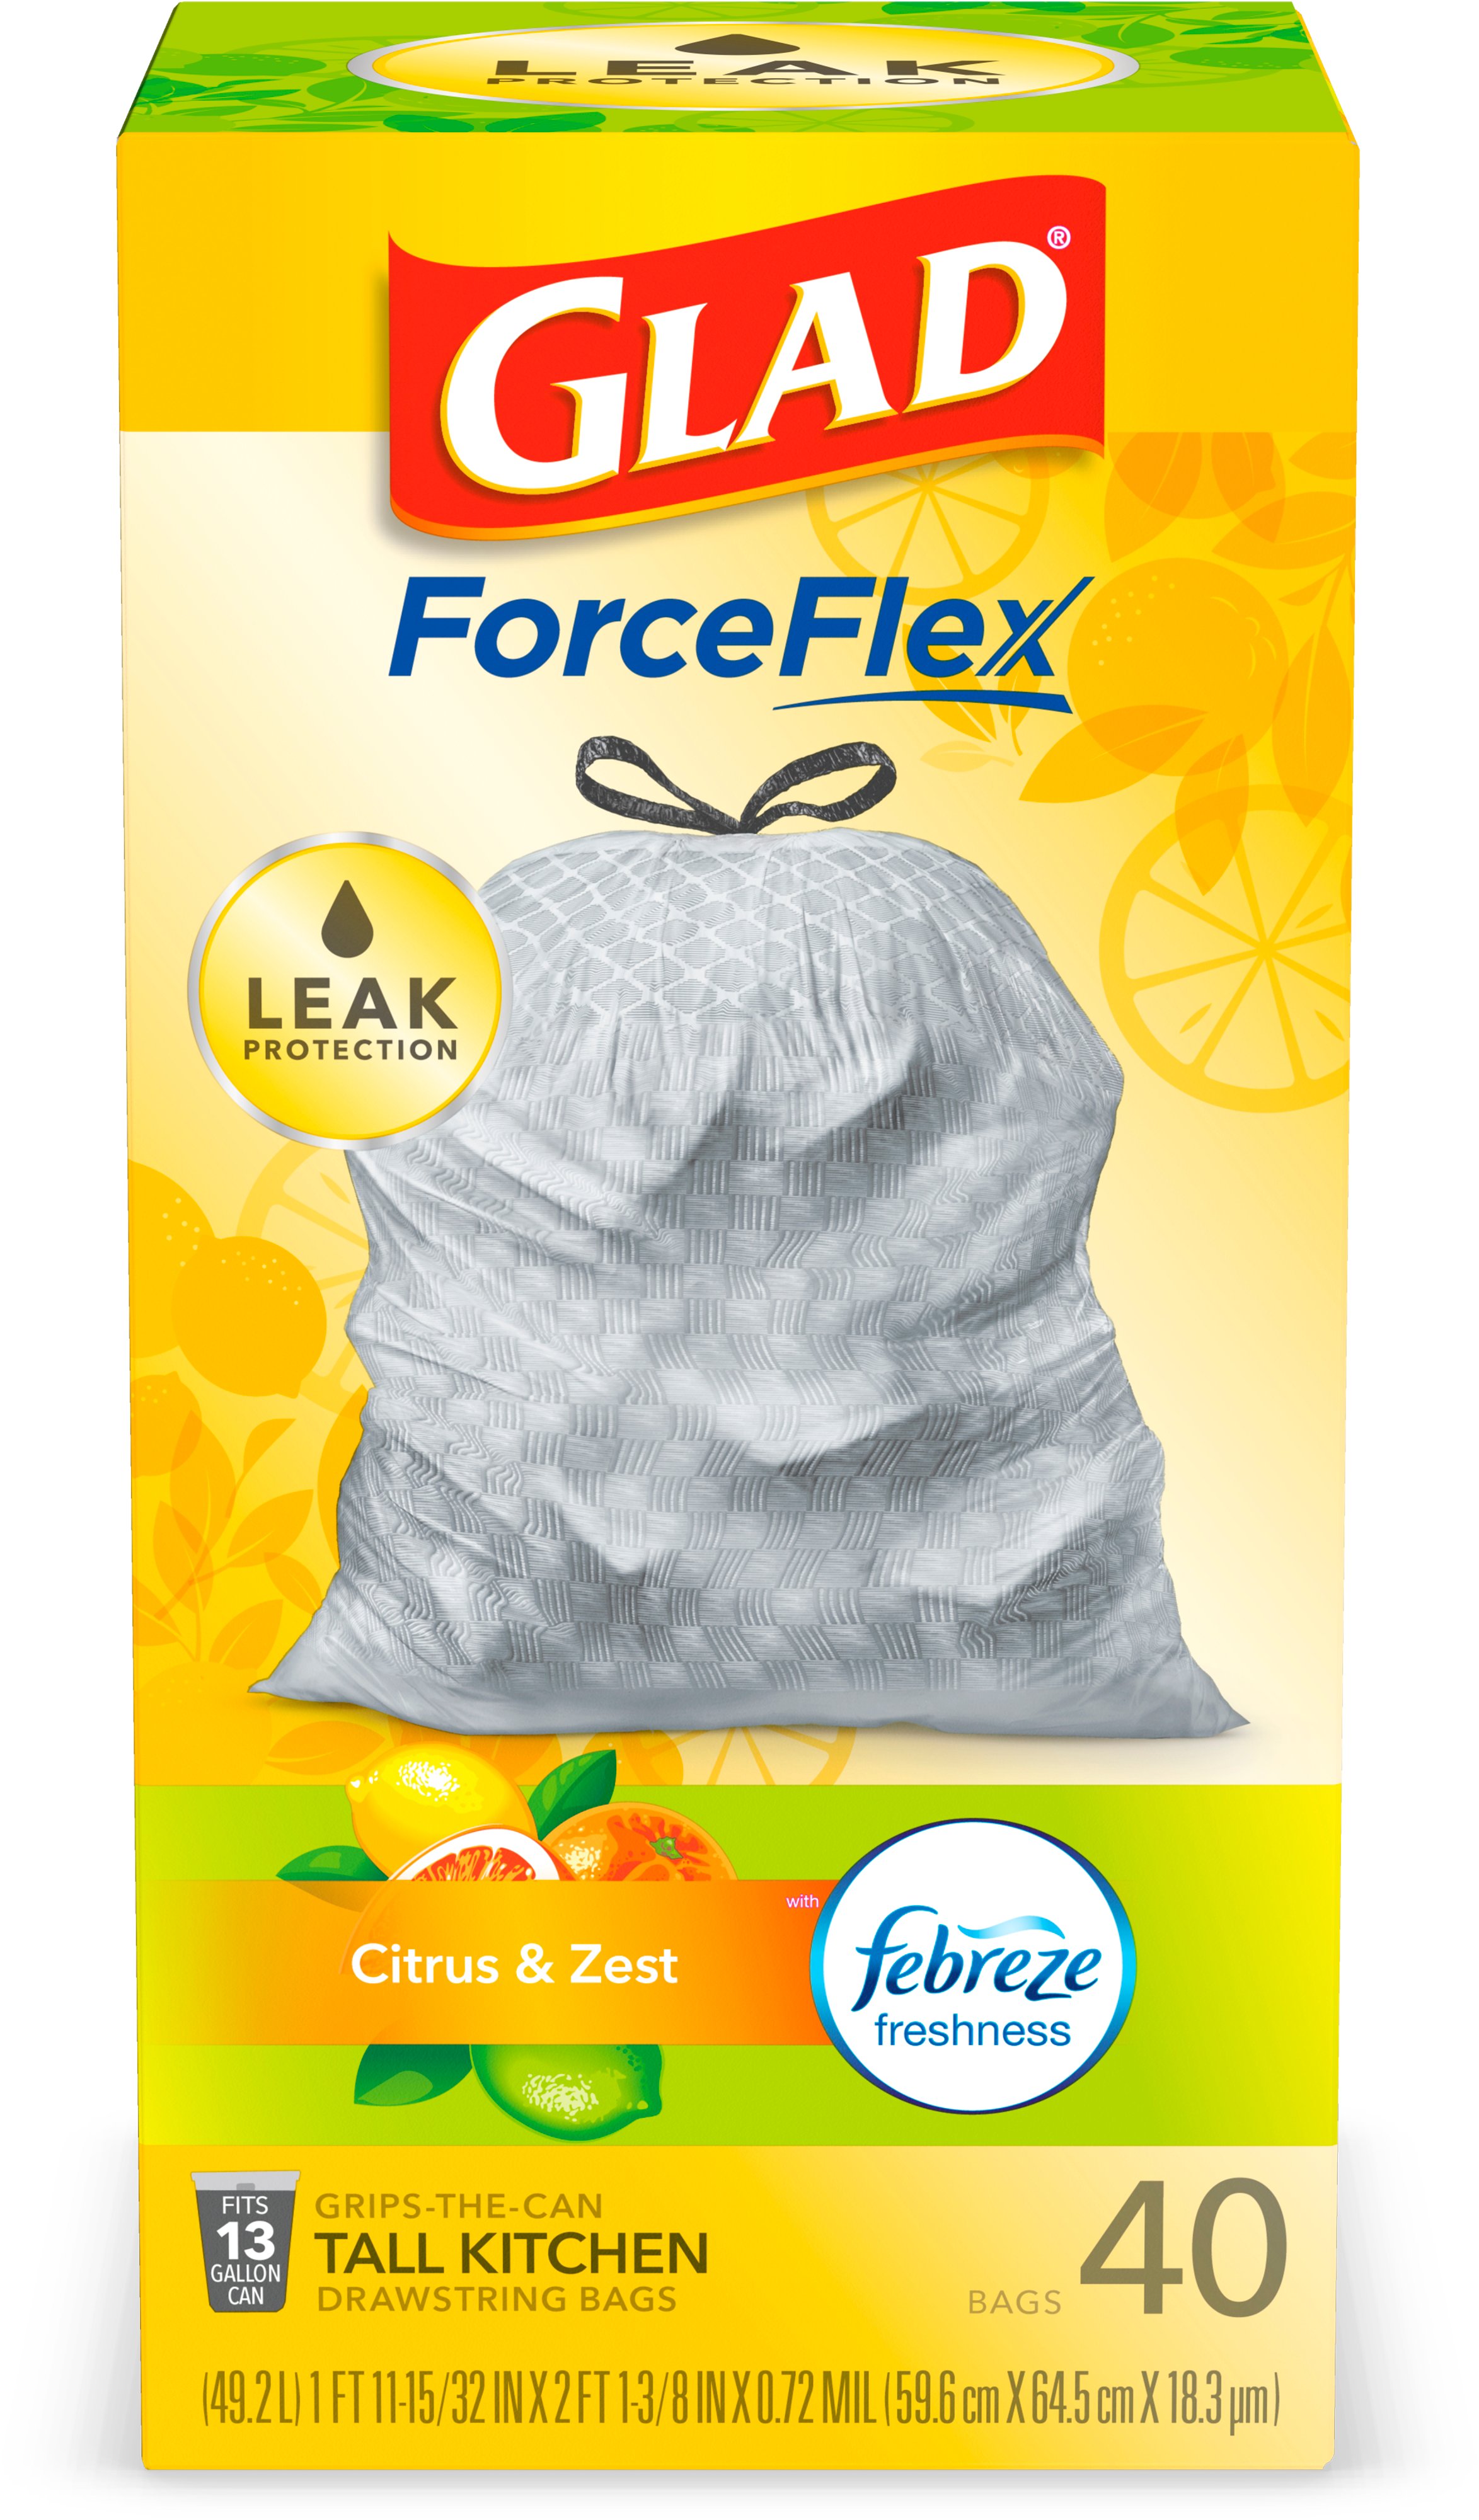 Glad ForceFlex Febreze Citrus & Zest Scent Drawstring Tall Kitchen 13  Gallon Trash Bags - Shop Trash Bags at H-E-B